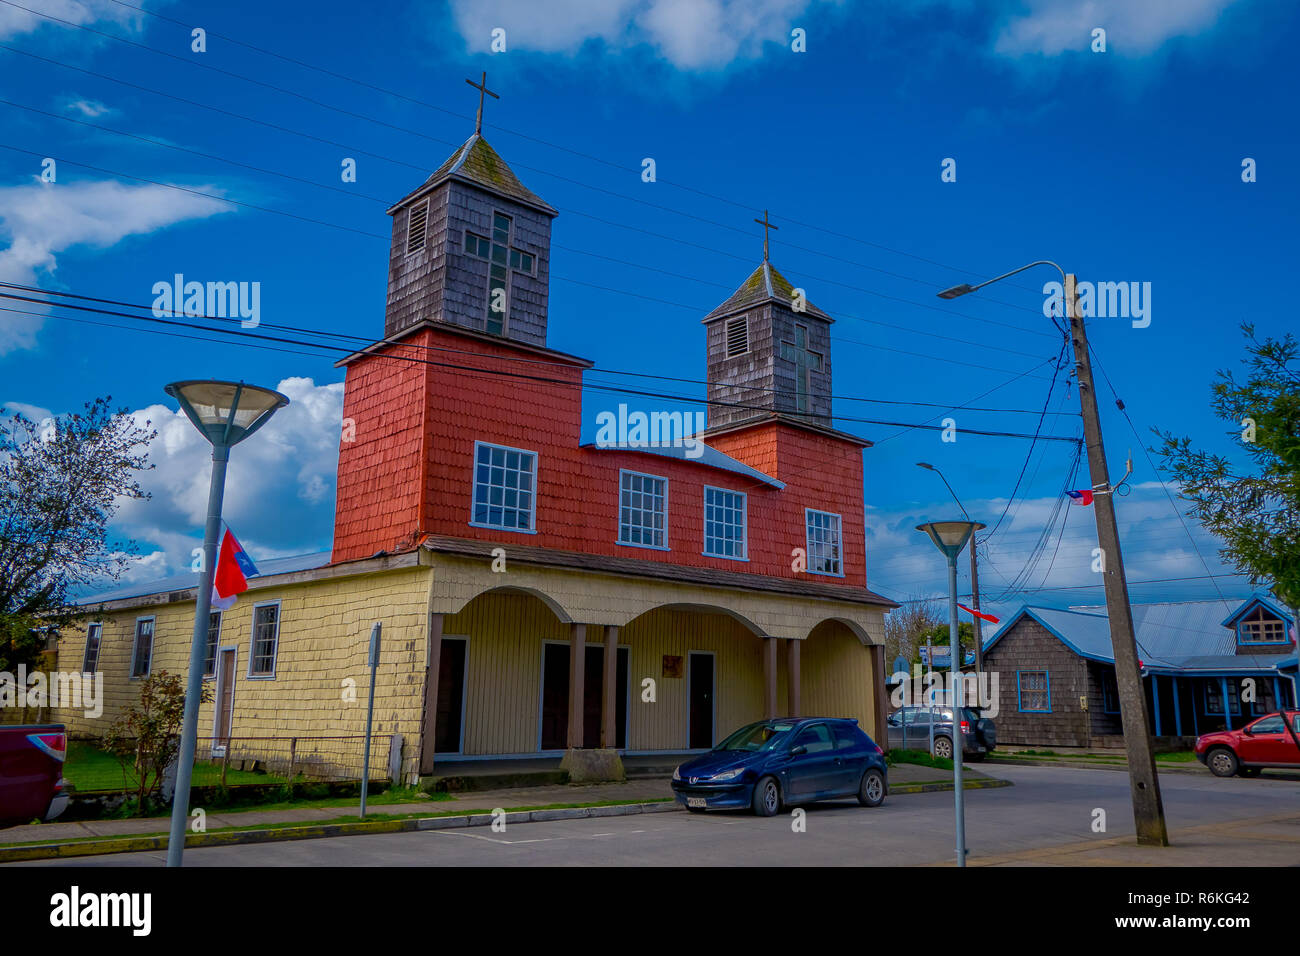 Chiloé, Chili - 27 septembre, 2018 : vue extérieure de la façade de l'église situé sur l'île Lemuy, est l'une des églises de Chilo archipel. Banque D'Images